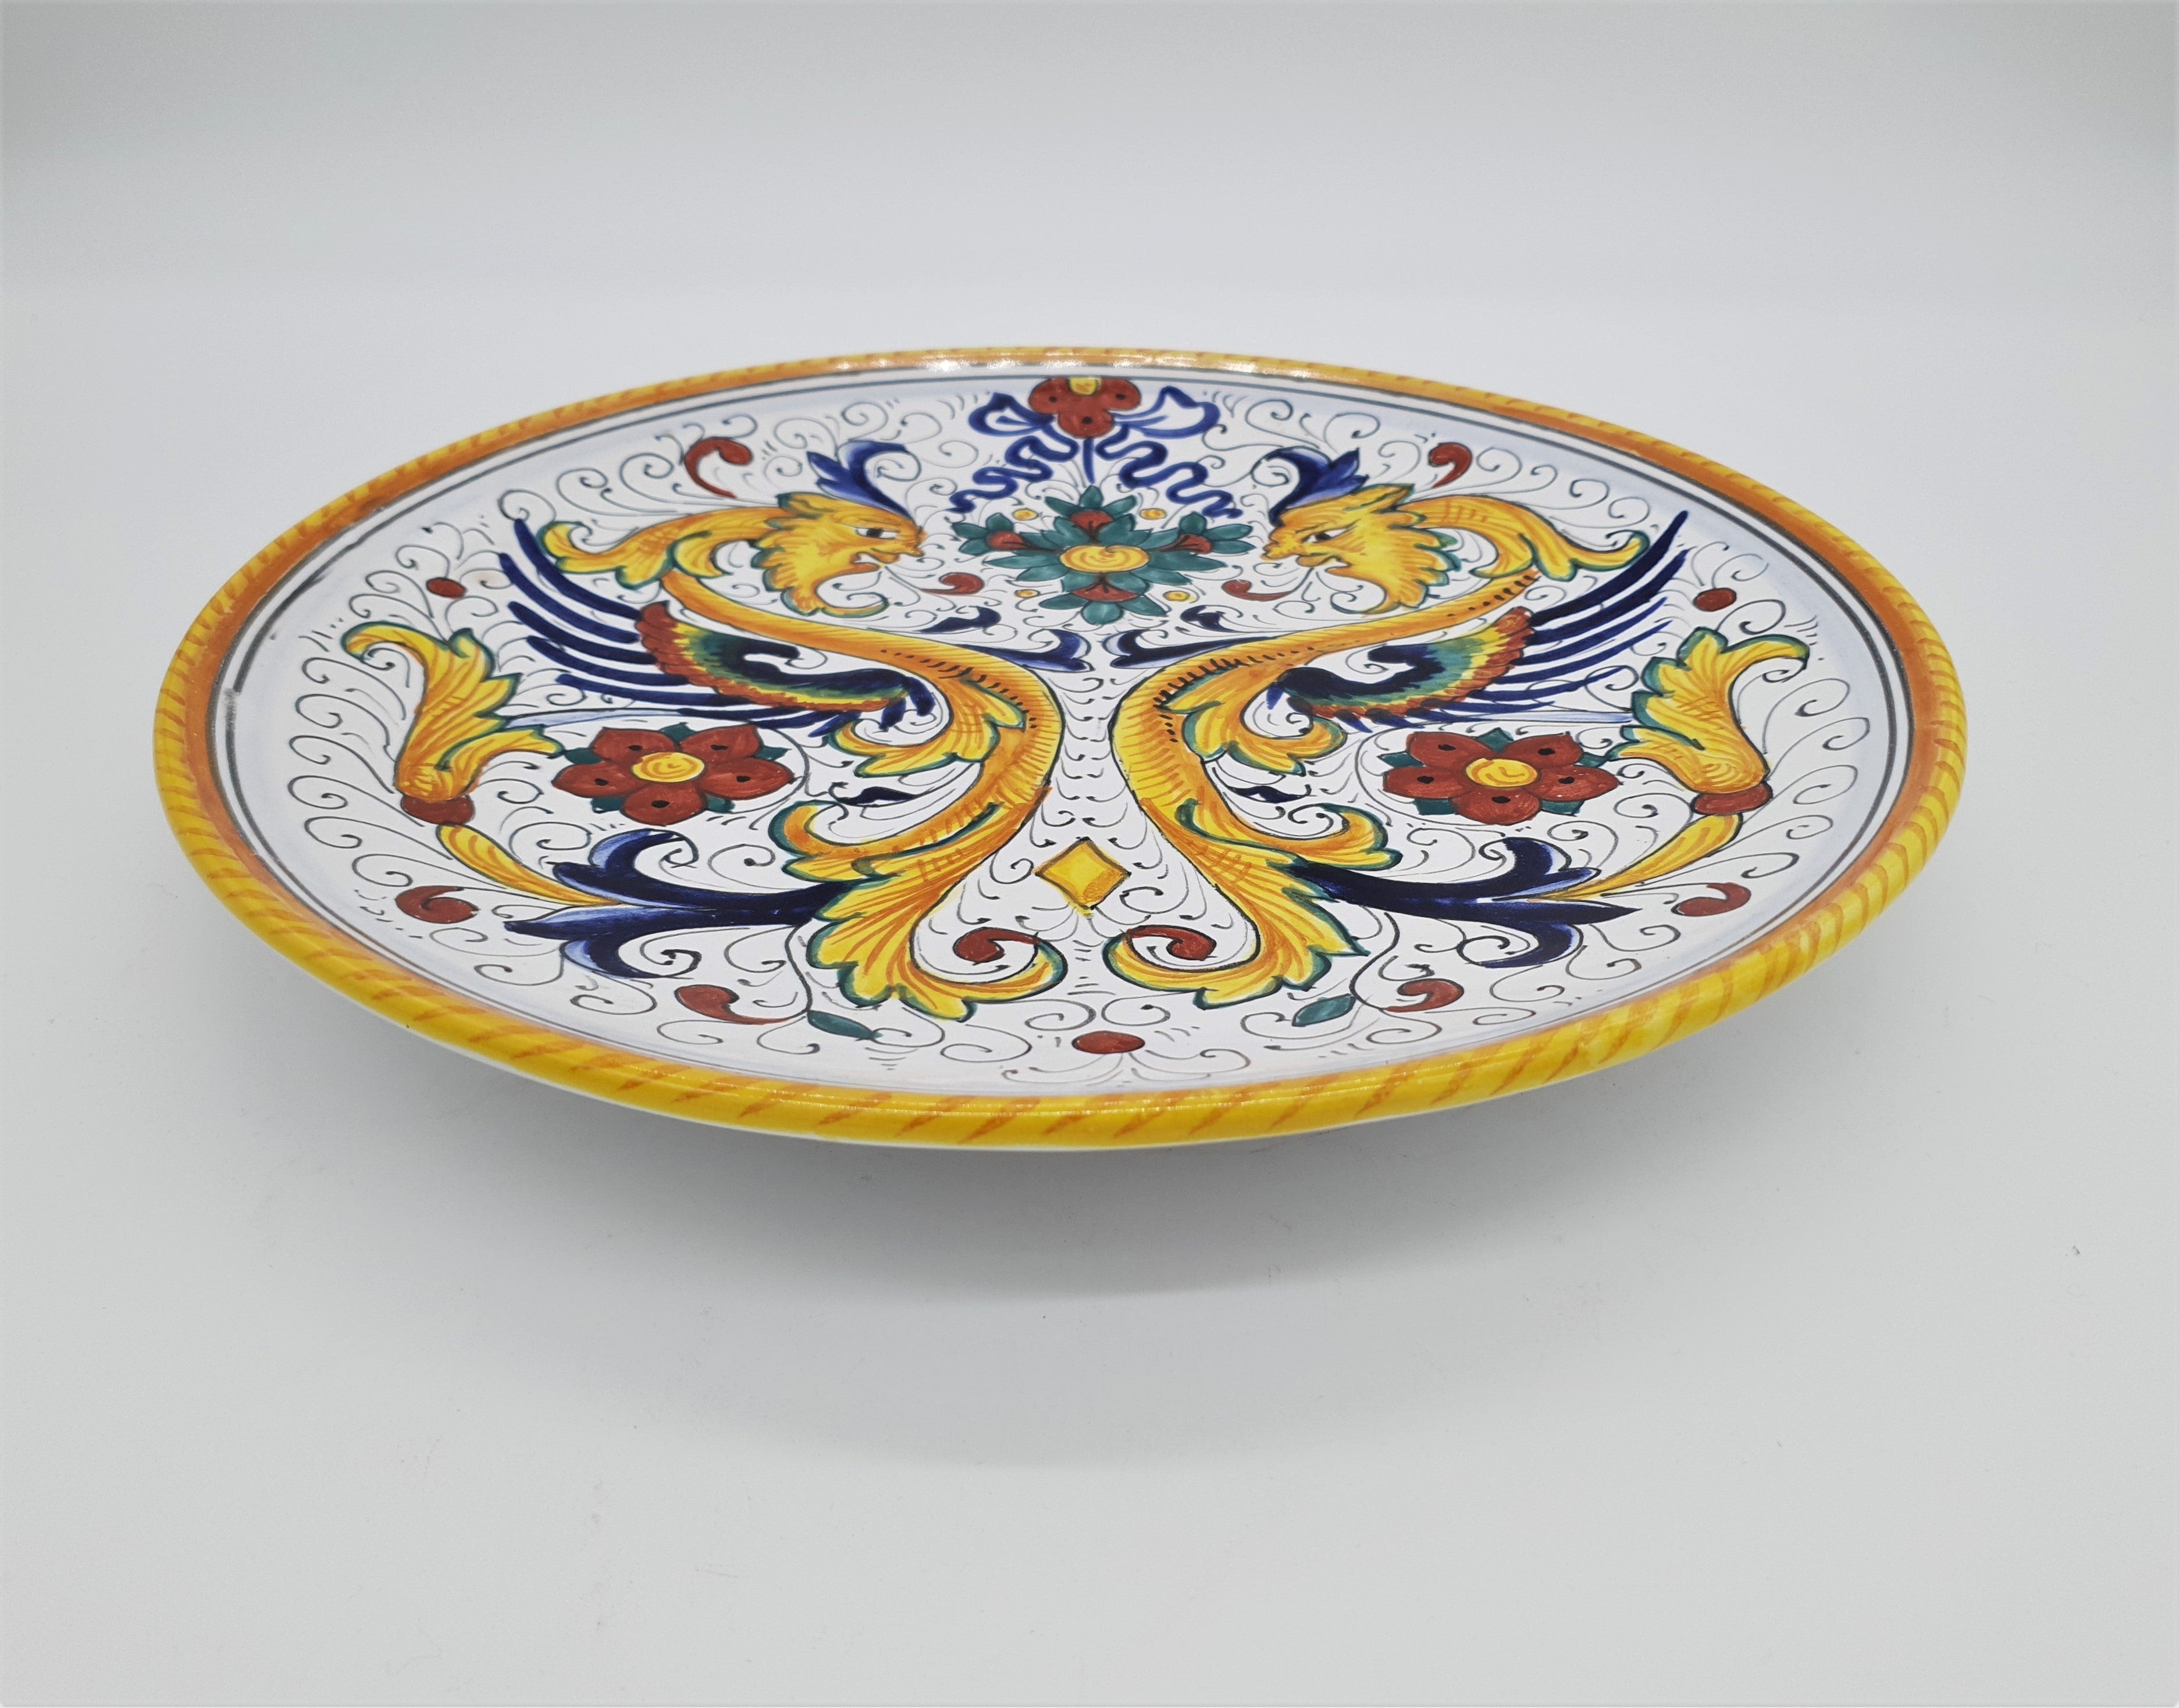 Raphaelesque Decoration Plate